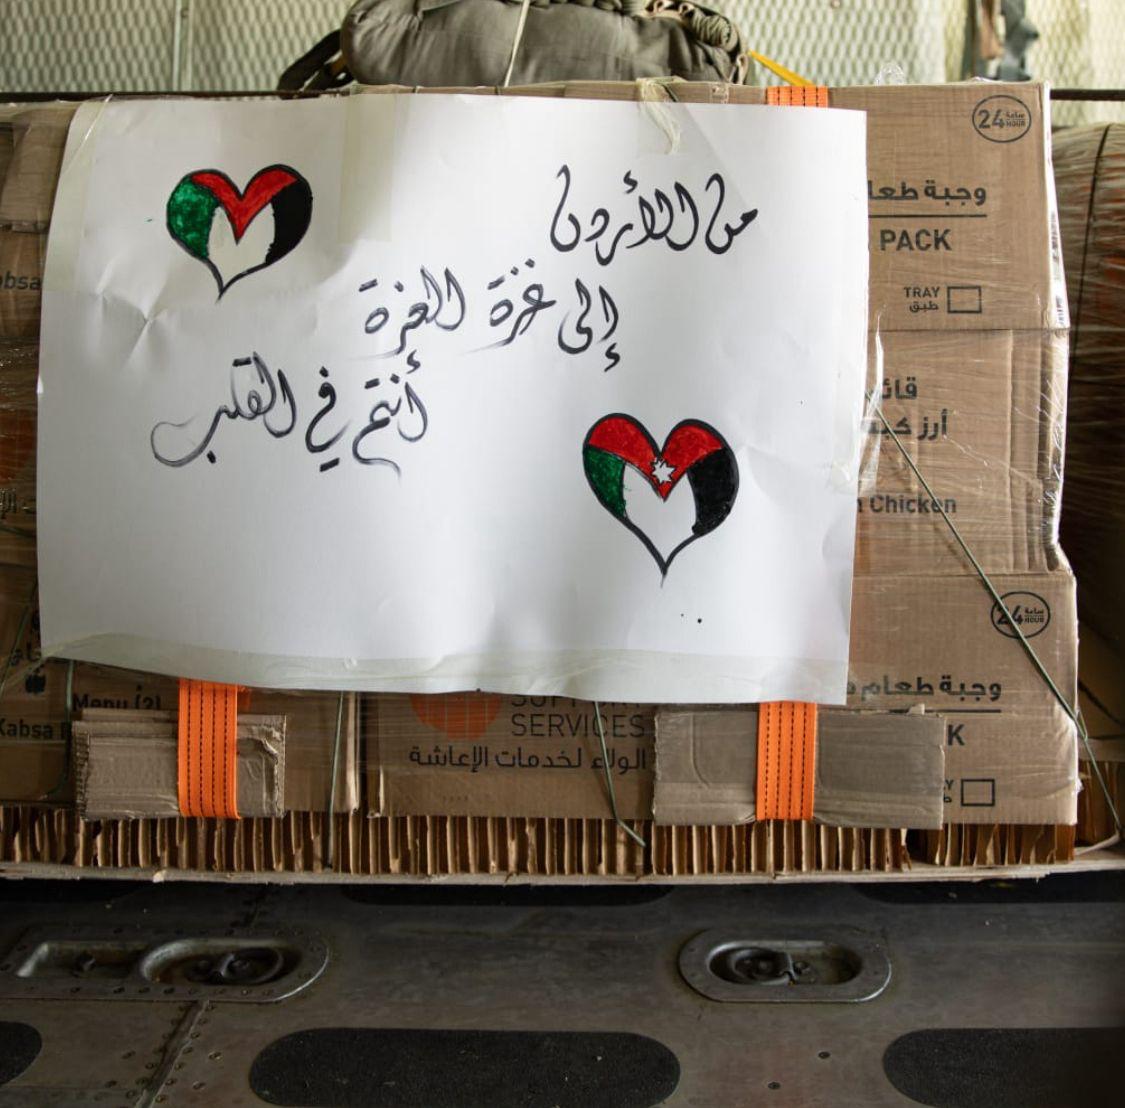 الحسنات تثمن توجيهات الملك والجيش الأردني  في عملية الانزال الاغاثية لأهل غزة